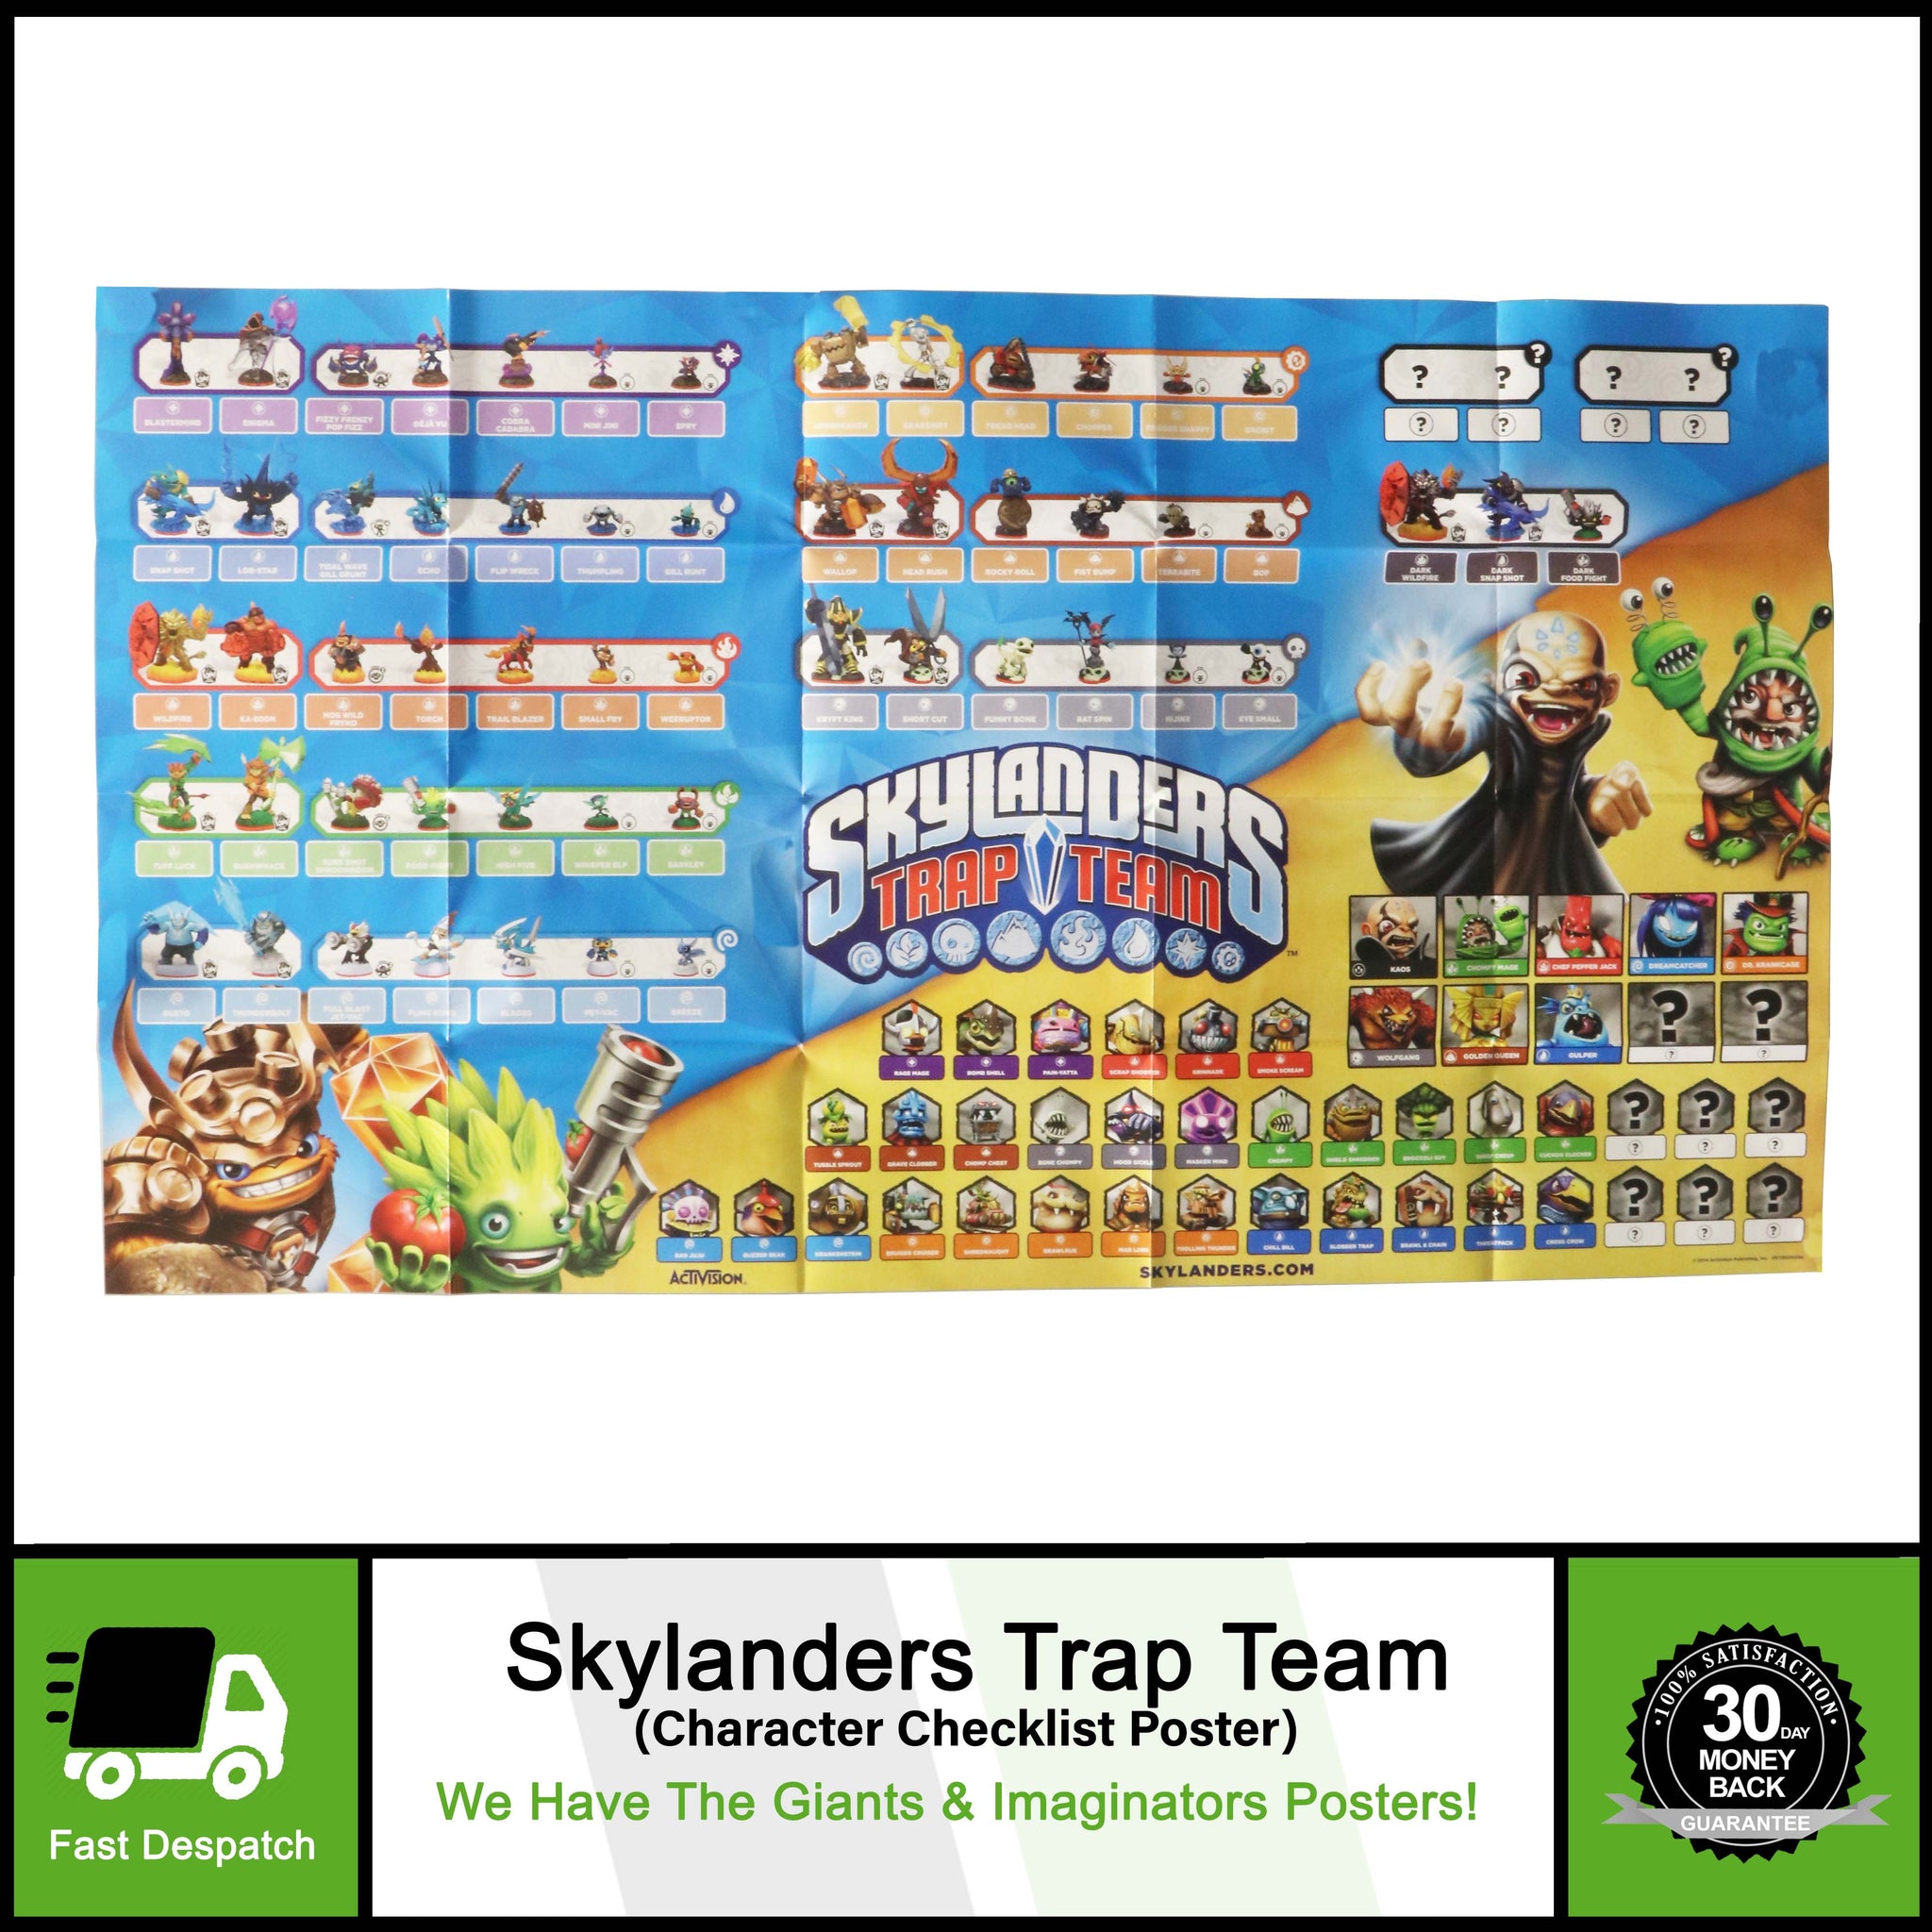 Skylanders: Trap Team - Análise